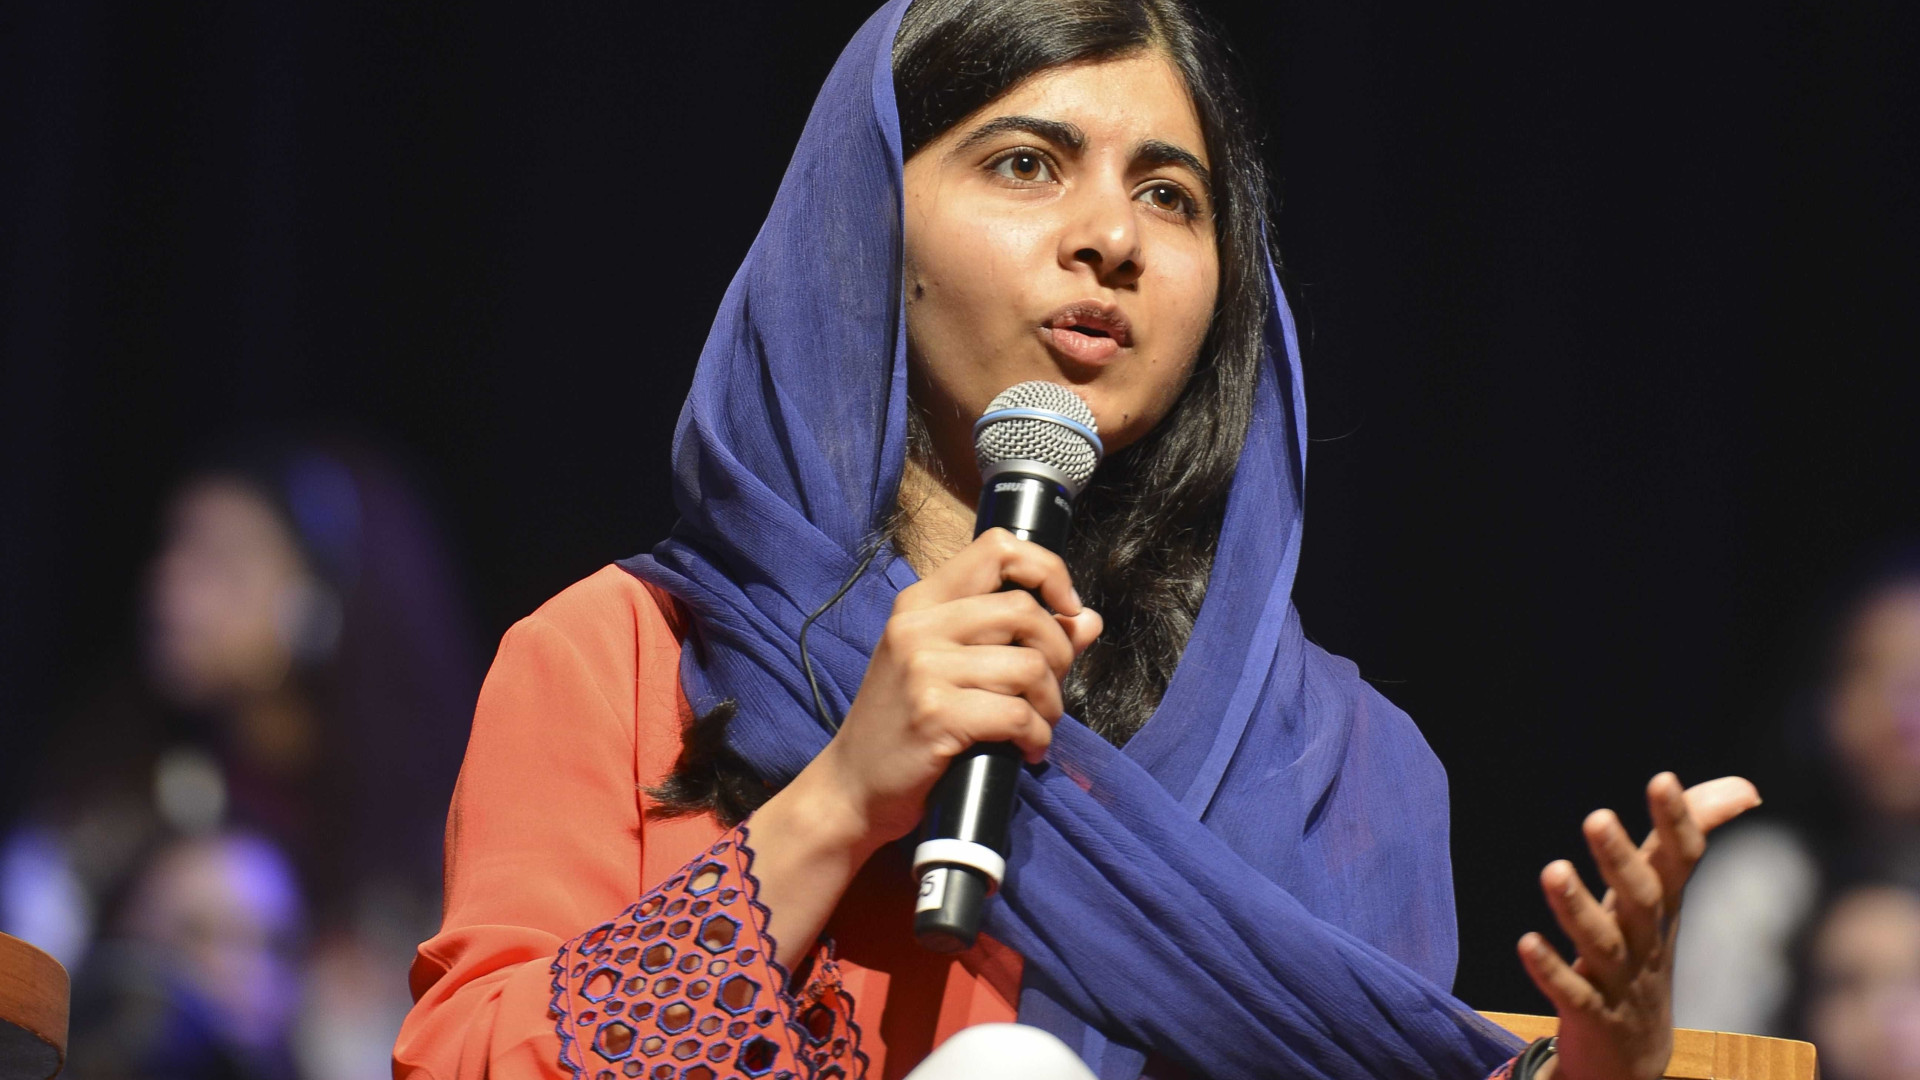 Saiba como Malala quer colocar 130 milhões de meninas na escola